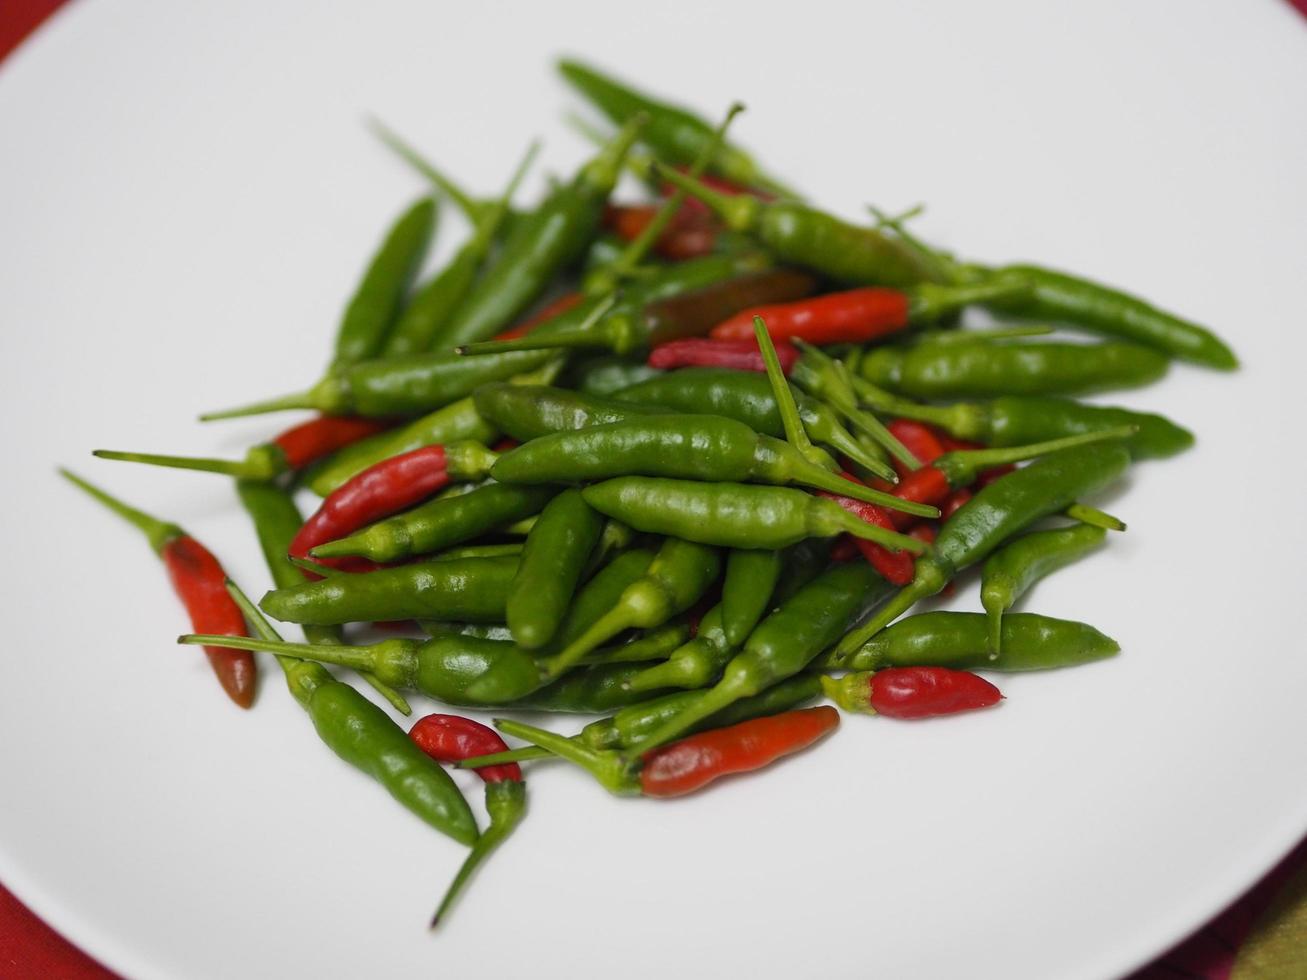 piment thaïlandais rouge vert, piment padi, capsicum annuum fraîcheur sur plaque blanche nourriture végétale photo